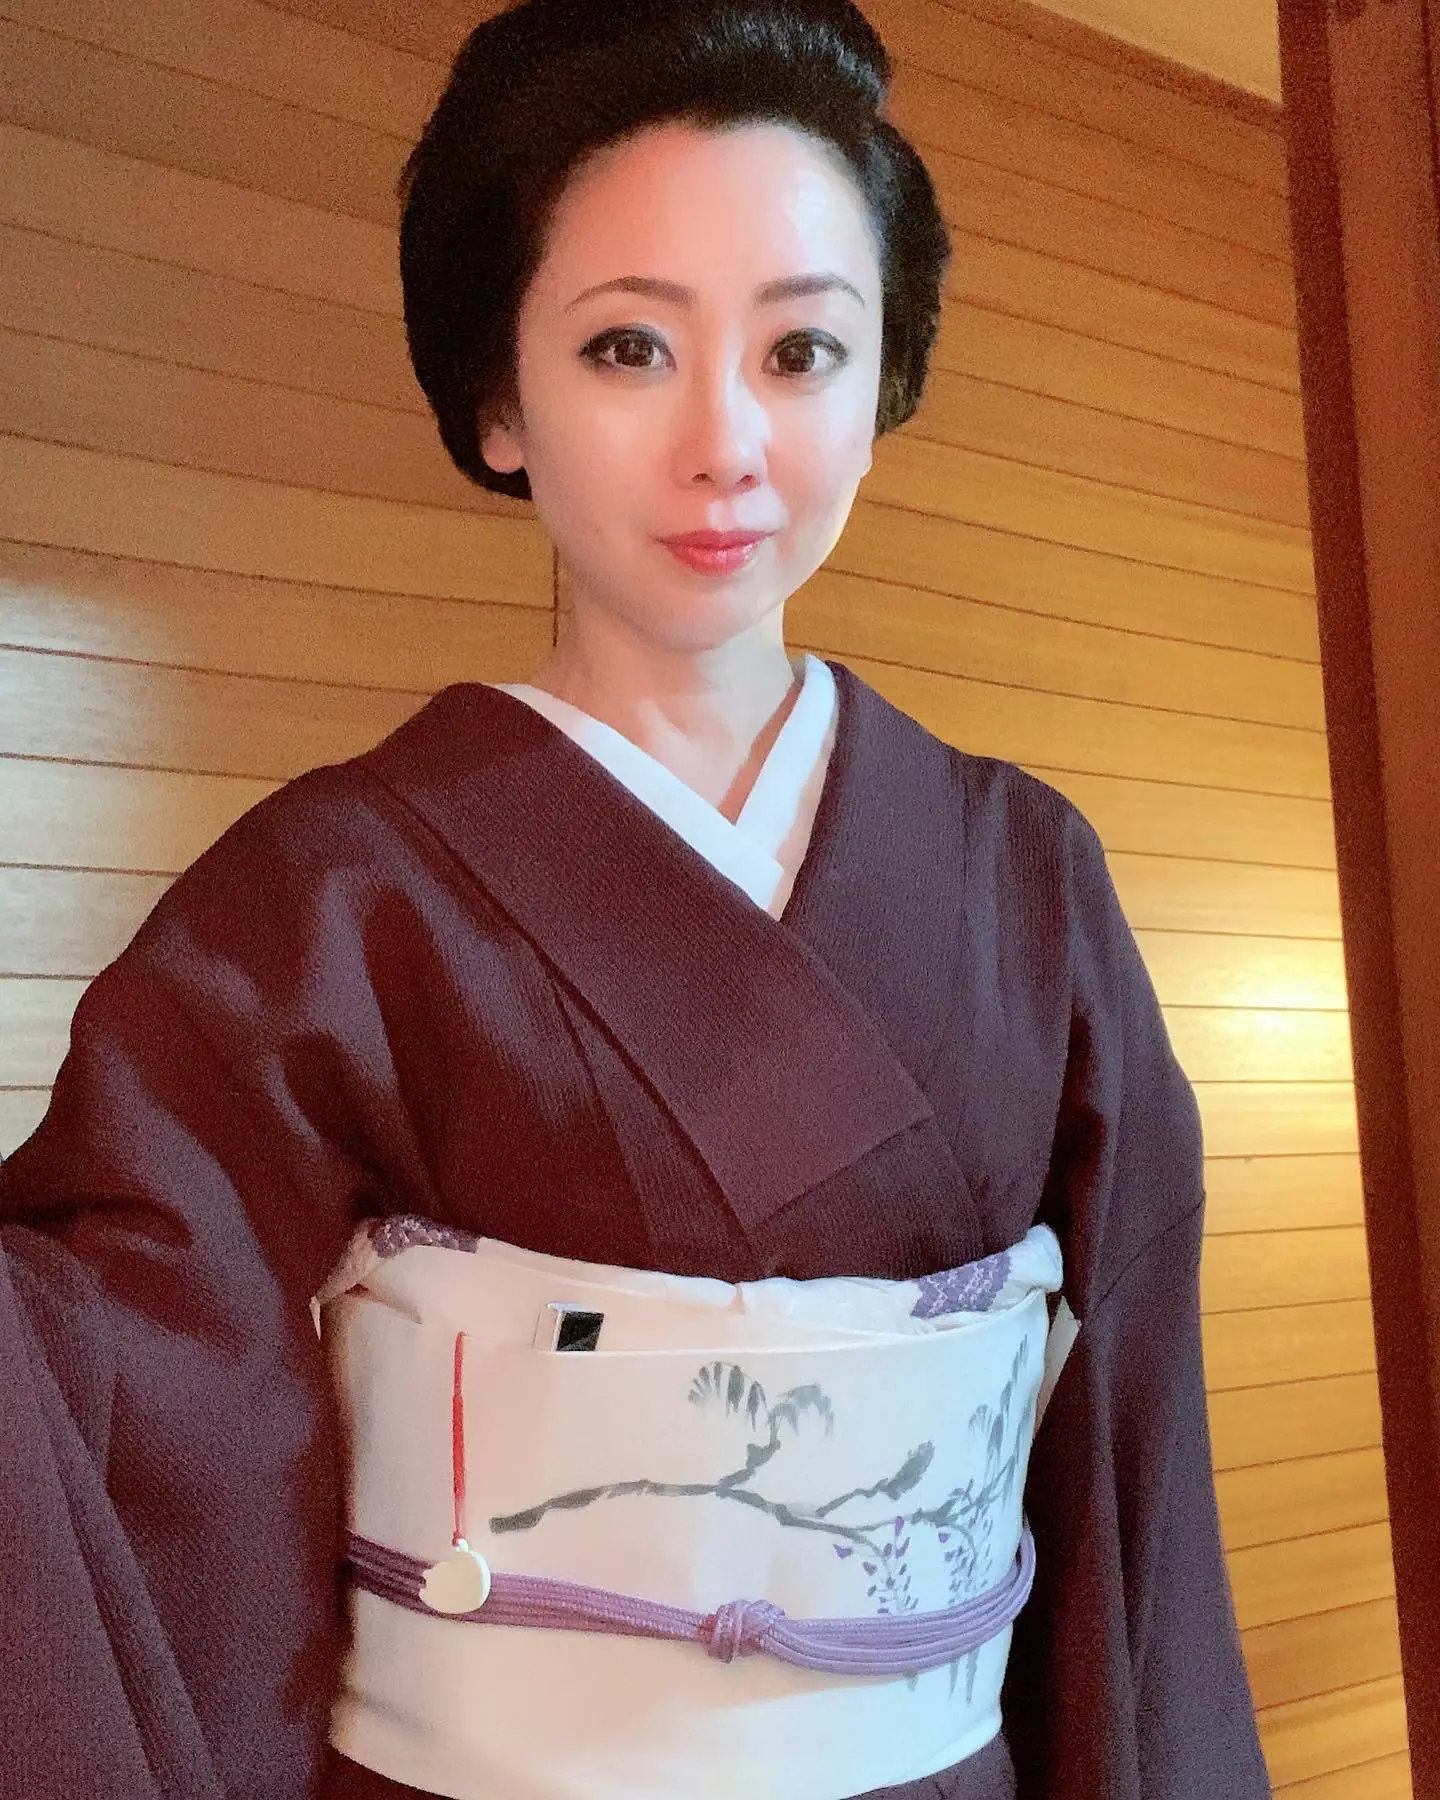 奈良の芸妓です。今年35周年 | 芸妓 菊乃が投稿したフォトブック | Lemon8